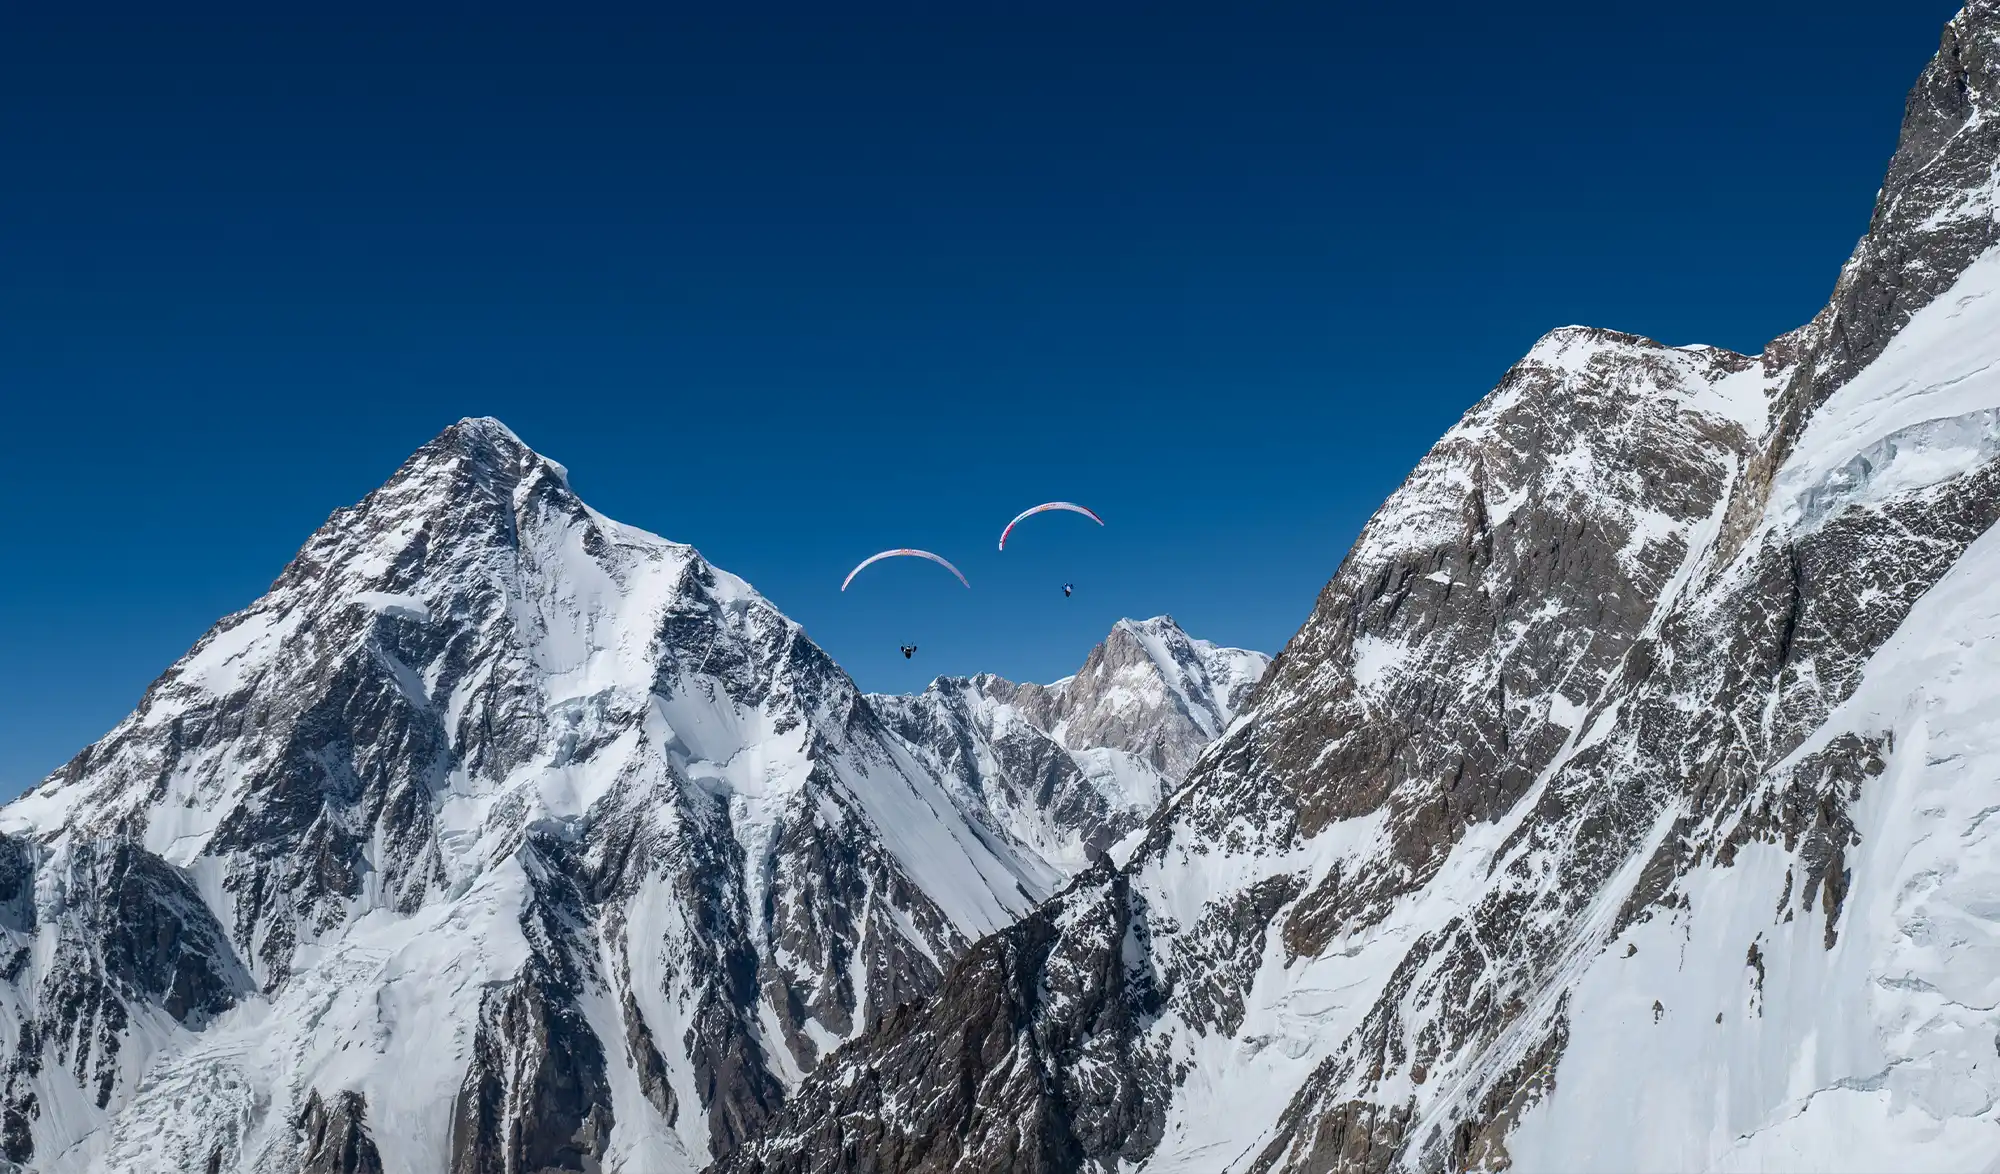 Tom de Dorlodot & Horacio Llorens vol en parapente au dessus du K2